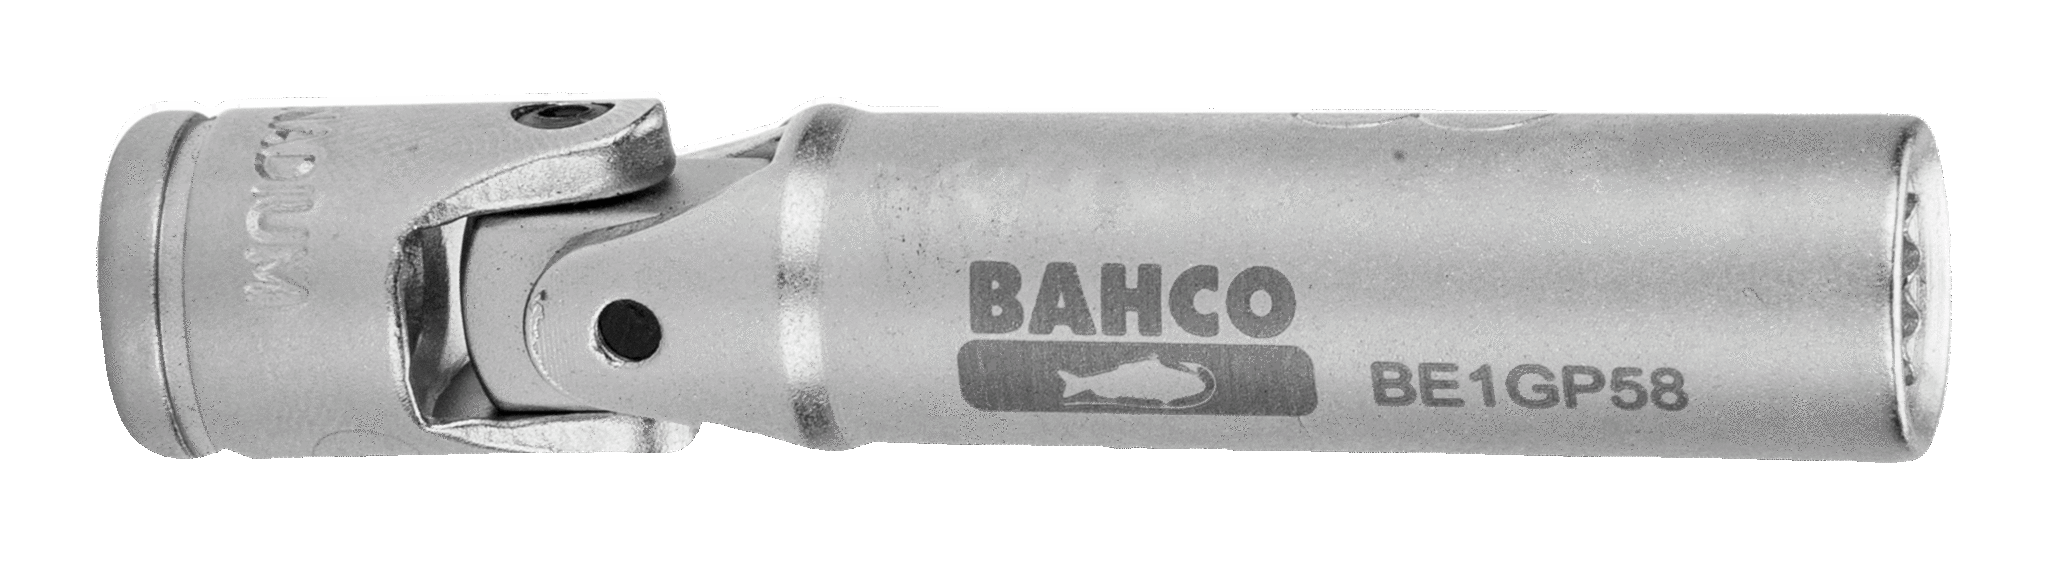  Ohebné nástrčné klíče na zapalovací svíčky BAHCO BE1GP510